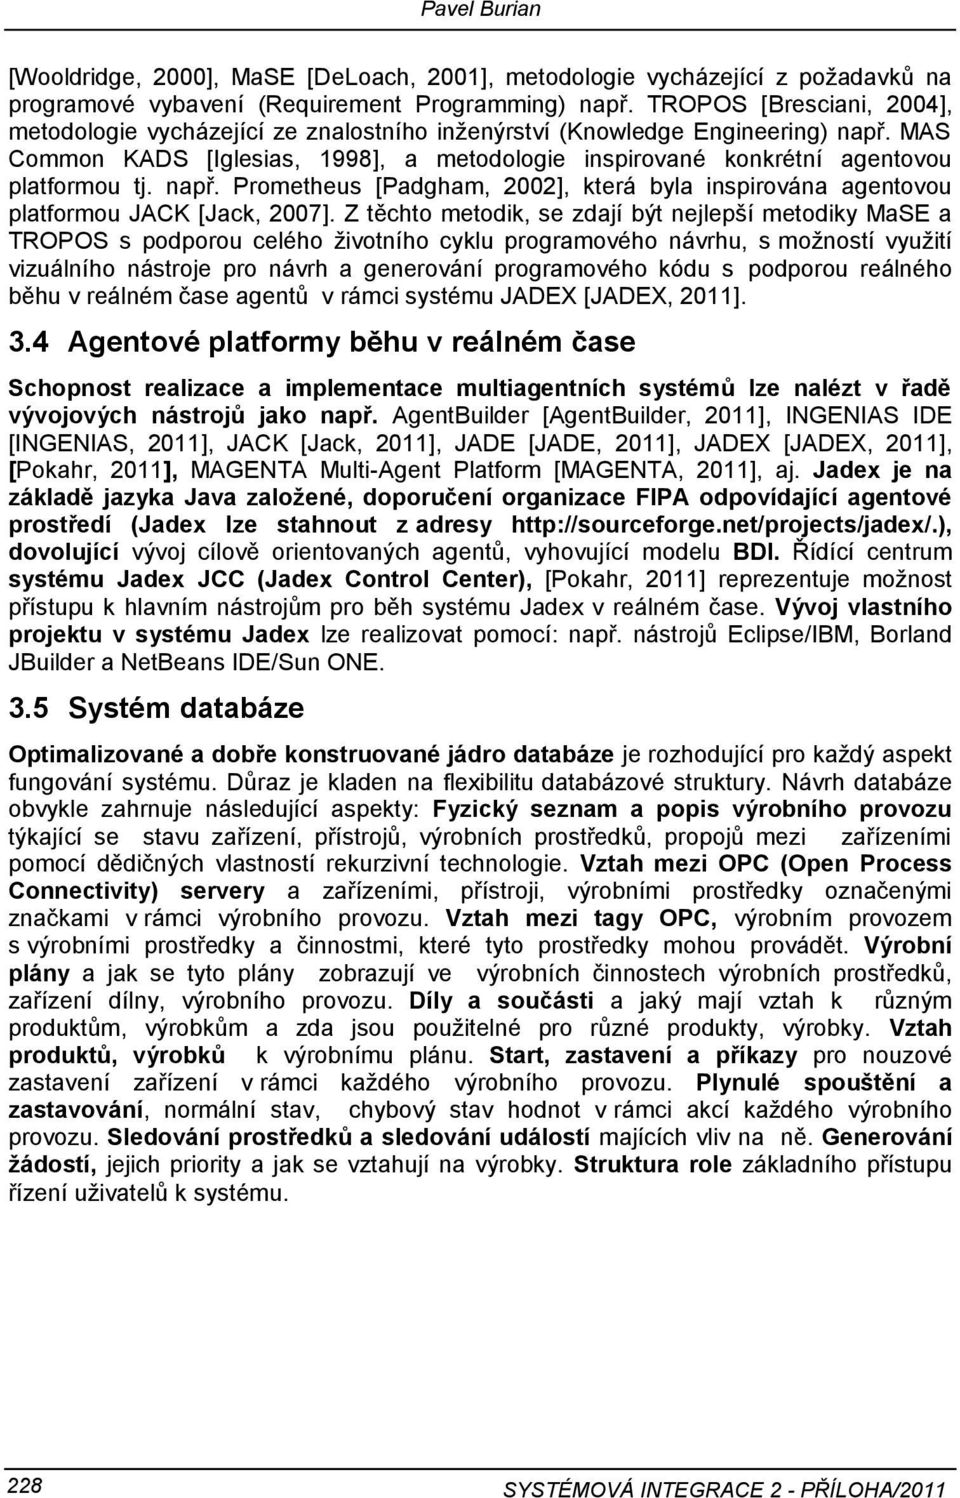 MAS Common KADS [Iglesias, 1998], a metodologie inspirované konkrétní agentovou platformou tj. např. Prometheus [Padgham, 2002], která byla inspirována agentovou platformou JACK [Jack, 2007].